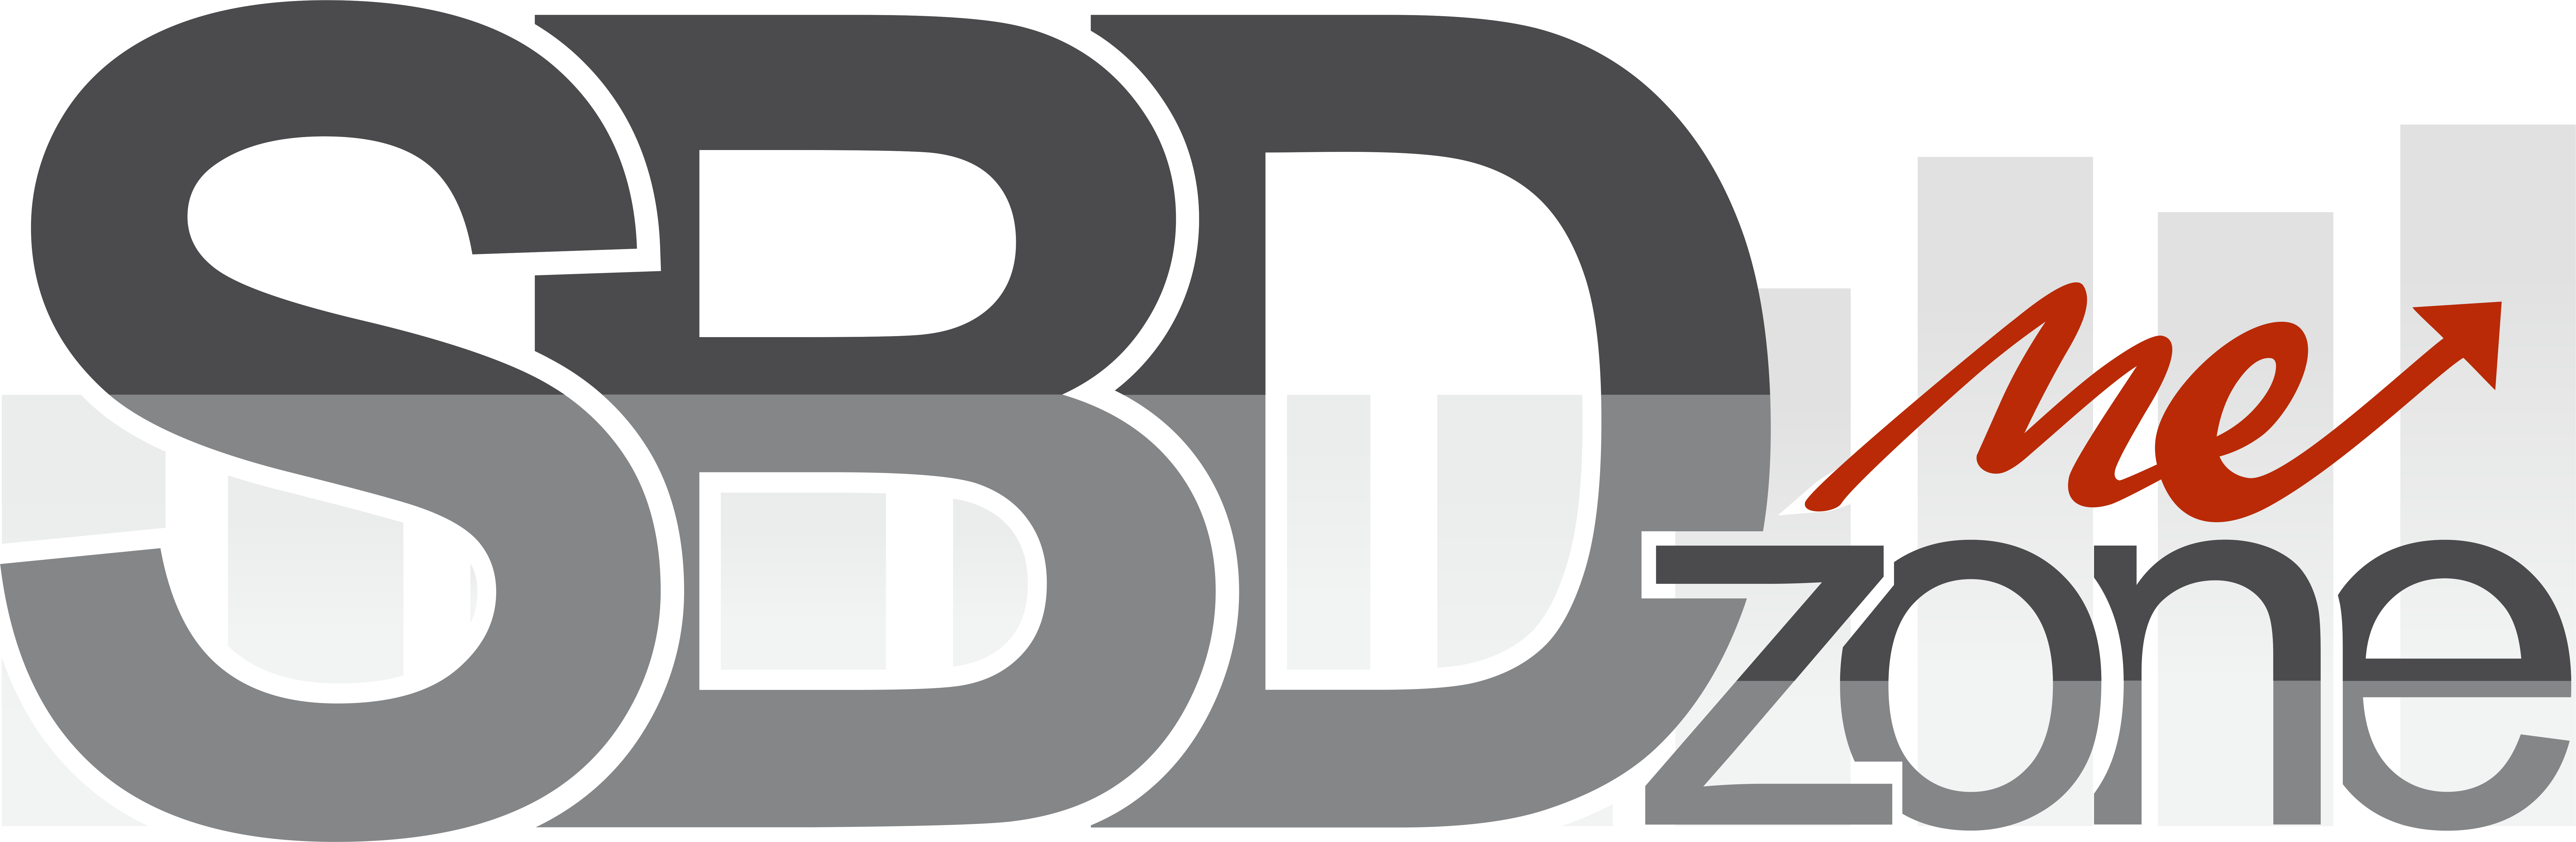 SBD zone me logo